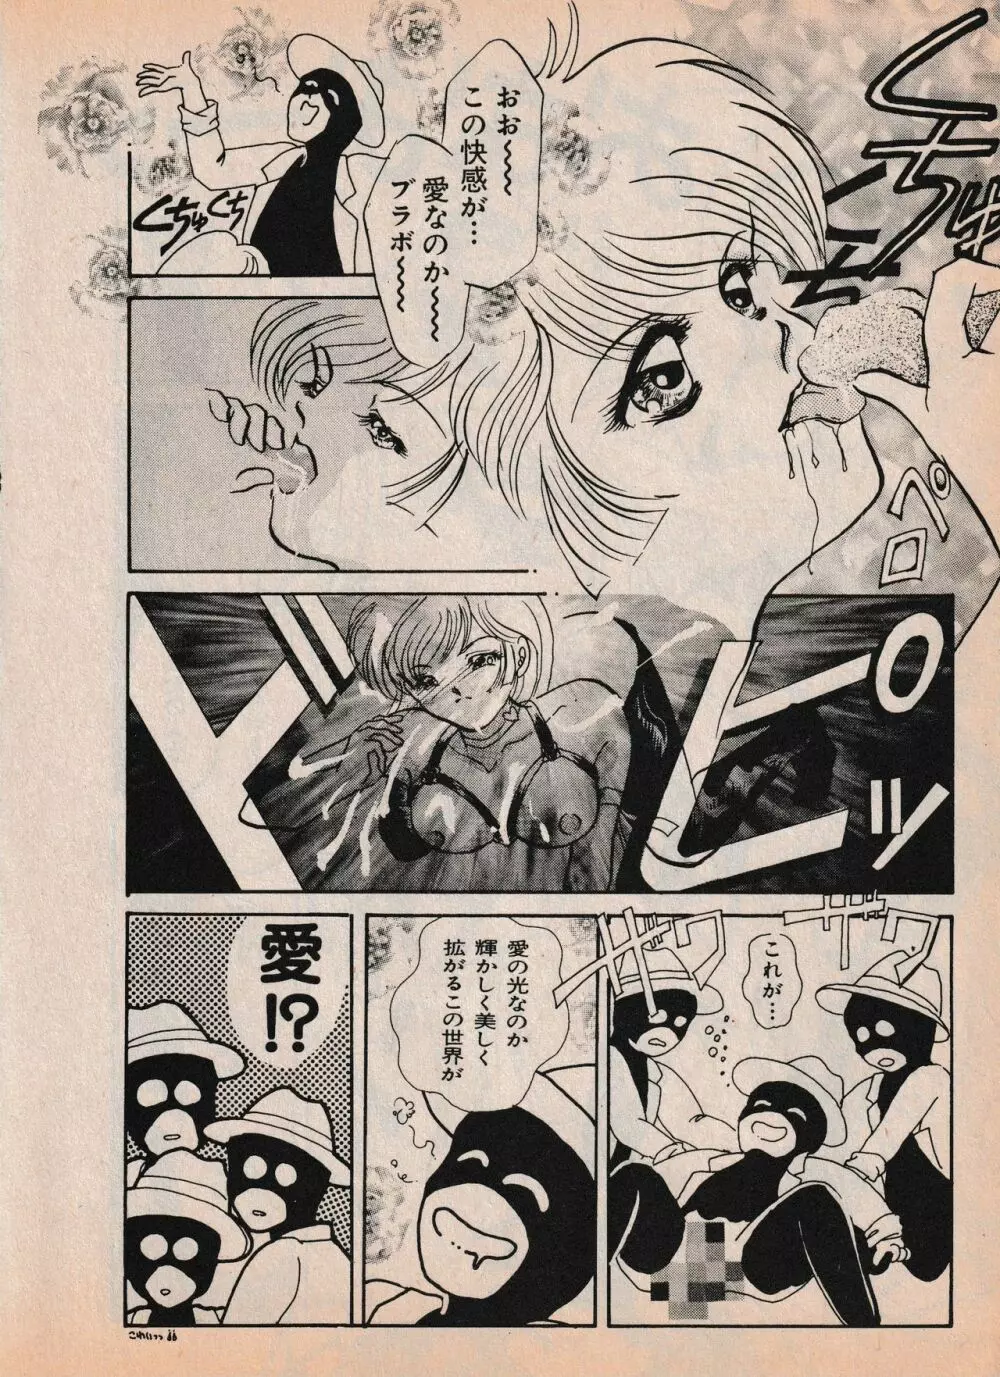 Sailor X vol. 4 – Sailor X vs. Cunty Horny! 73ページ